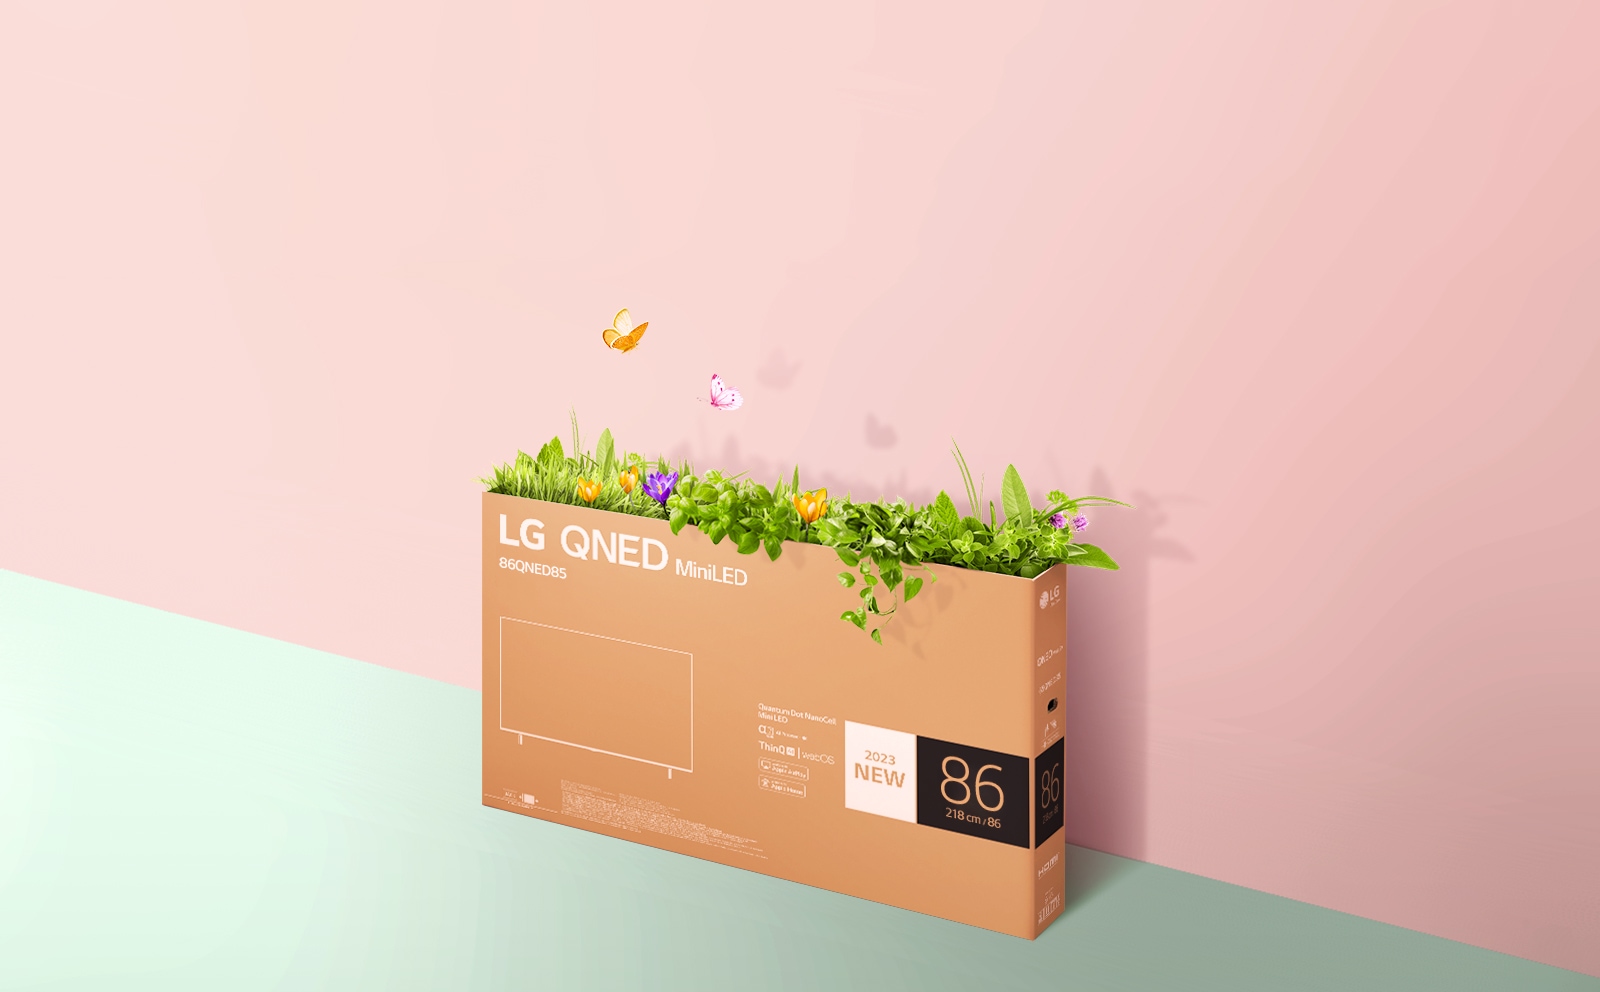 En emballage til QNED er placeret på en lyserød og grøn baggrund. Græsset vokser, og sommerfuglene flyver ud af pakken.